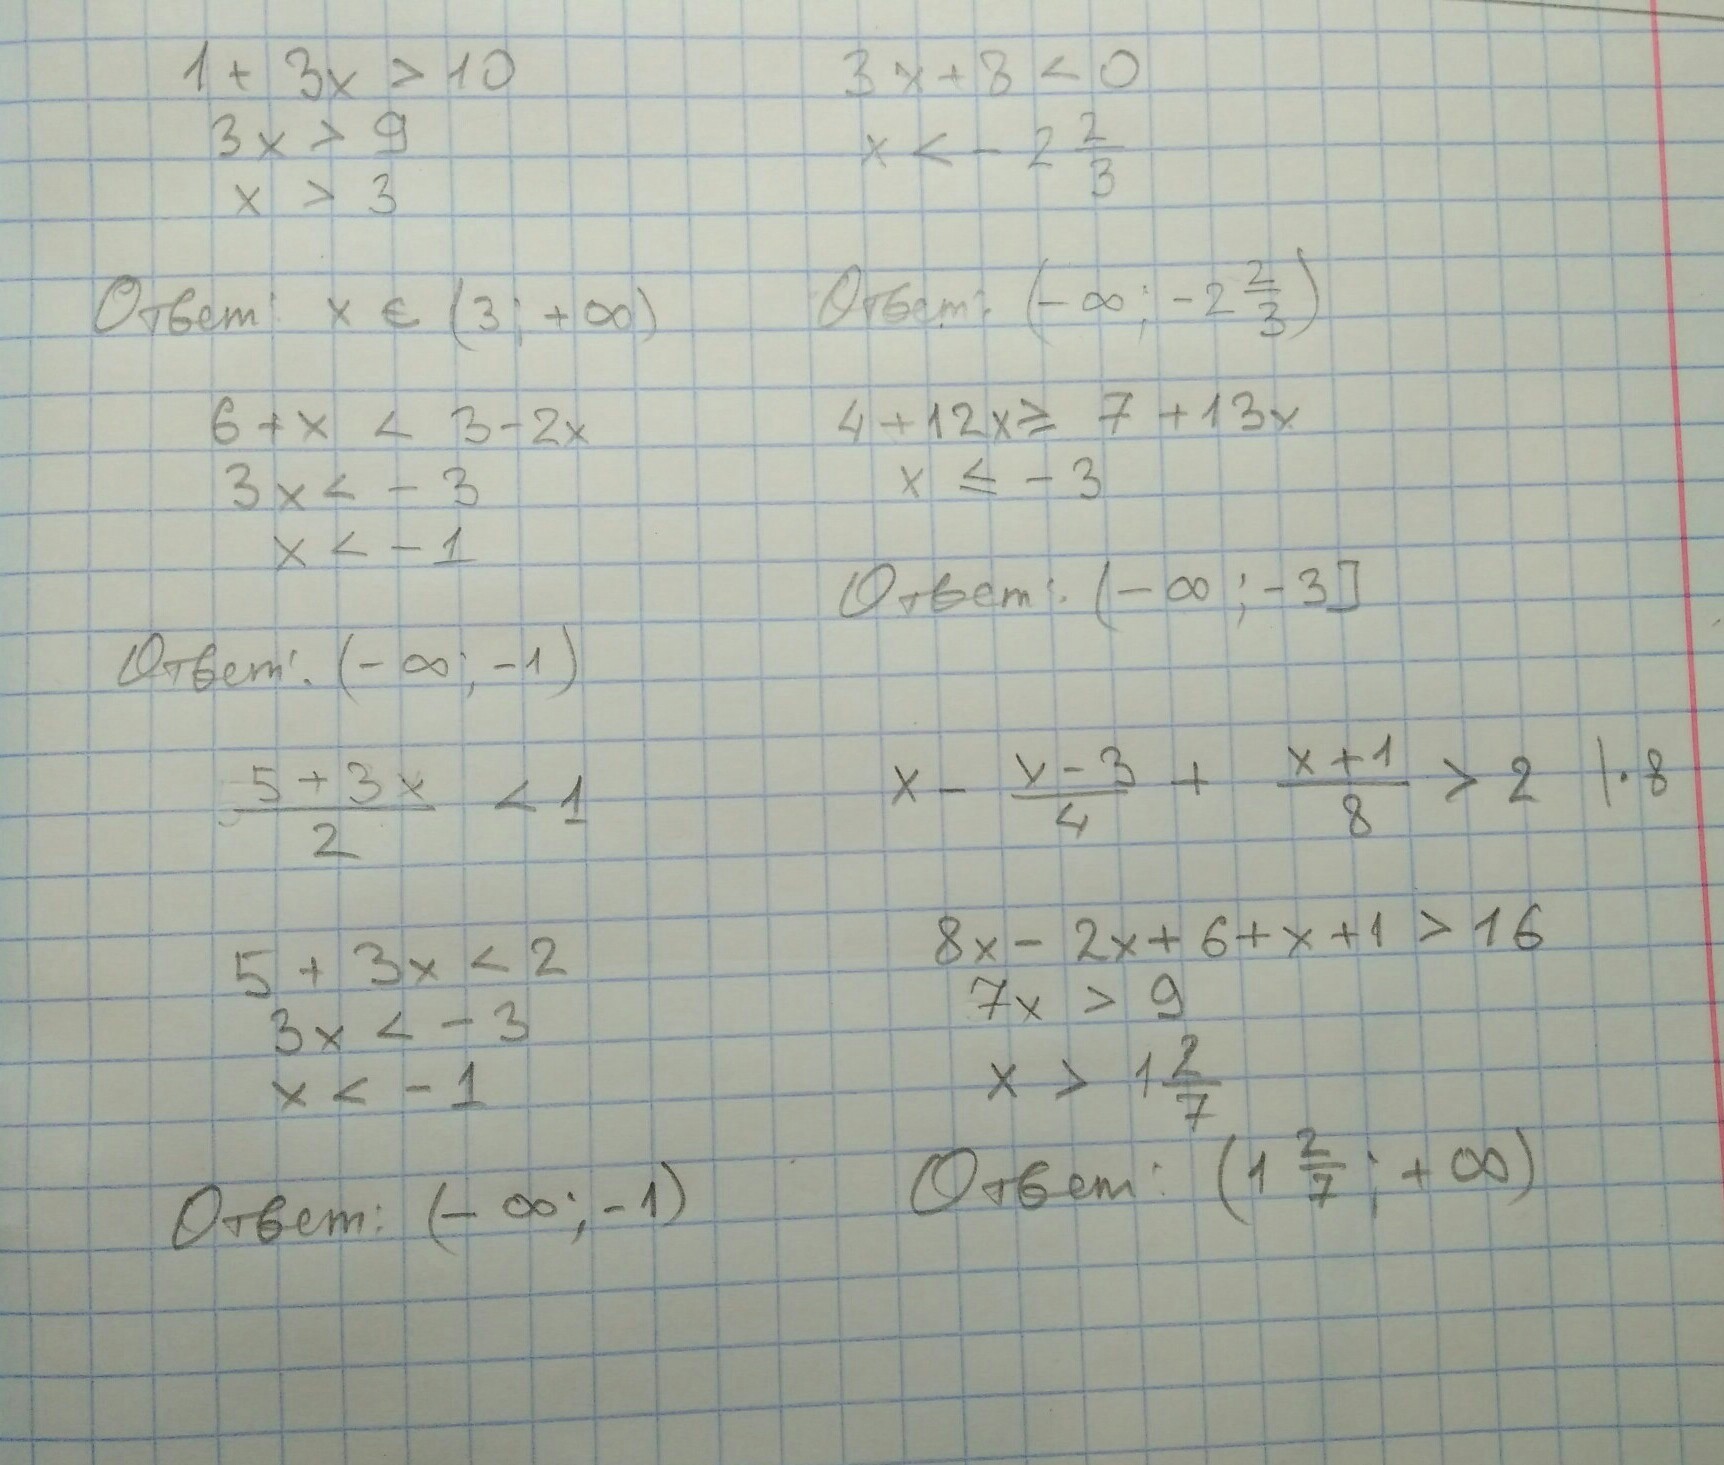 3 x2 5x 8 9. Решите неравенство .-4/(2х+8). 1/(X-2)(X-3) больше 0. 3x+2/x-4 меньше 0. Решение неравенства x2-3x-4 меньше или равно нулю.